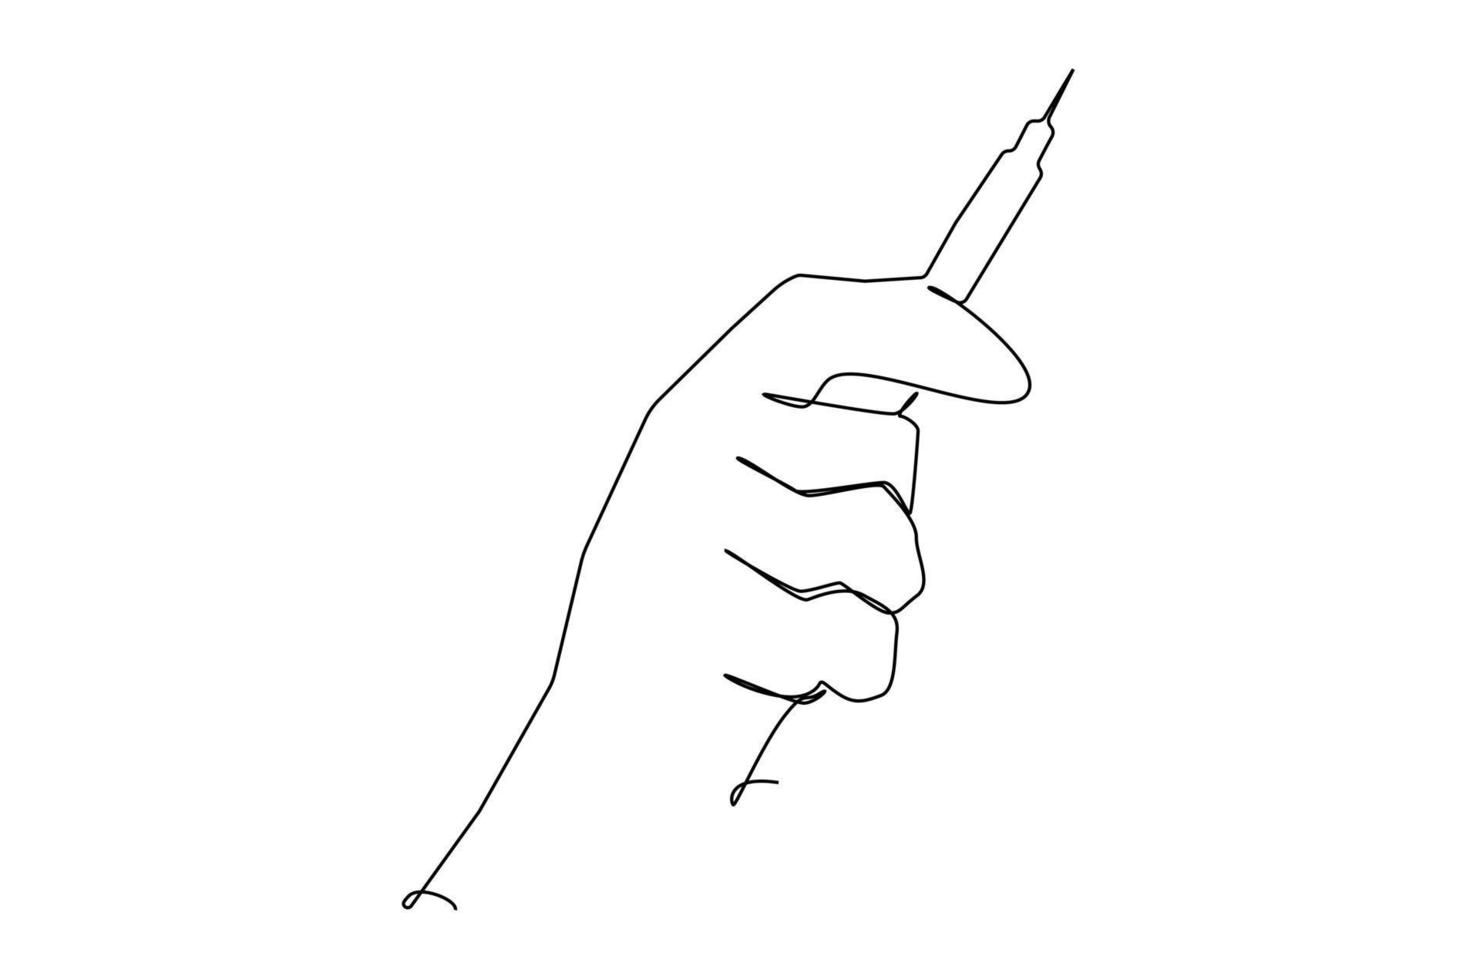 siringa in mano. un disegno a tratteggio oggetto vettoriale isolato a mano su uno sfondo bianco